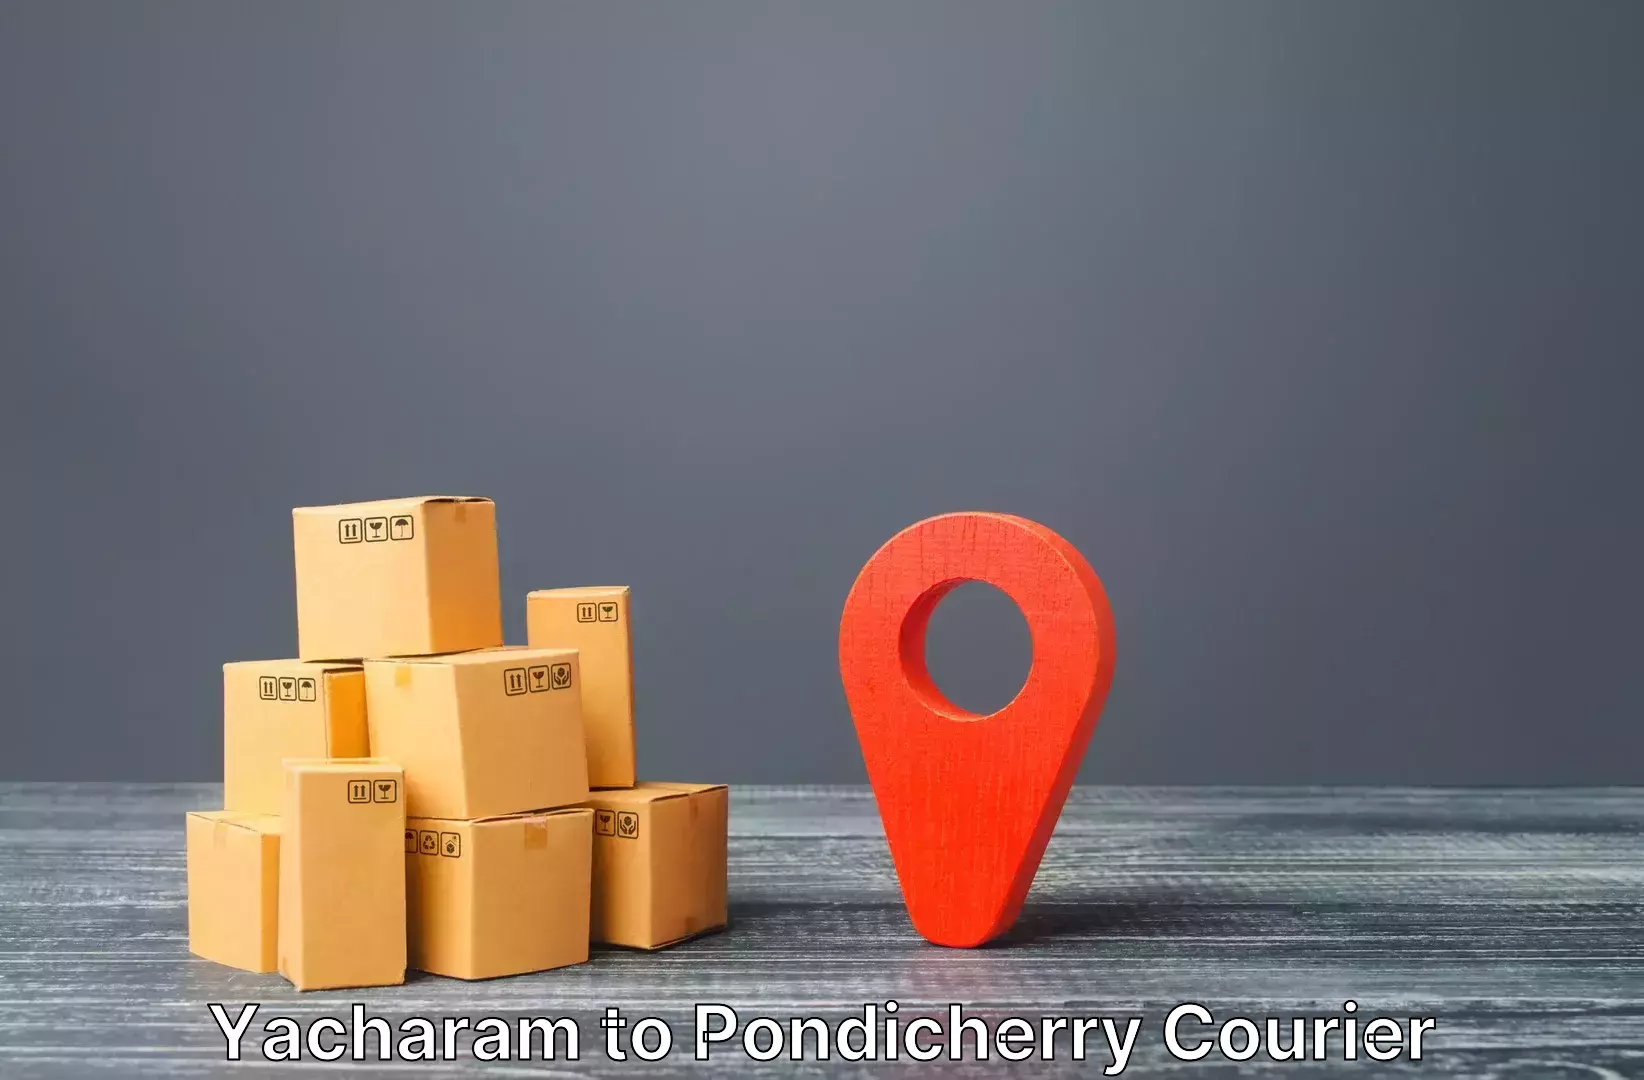 Luggage delivery system Yacharam to Pondicherry University